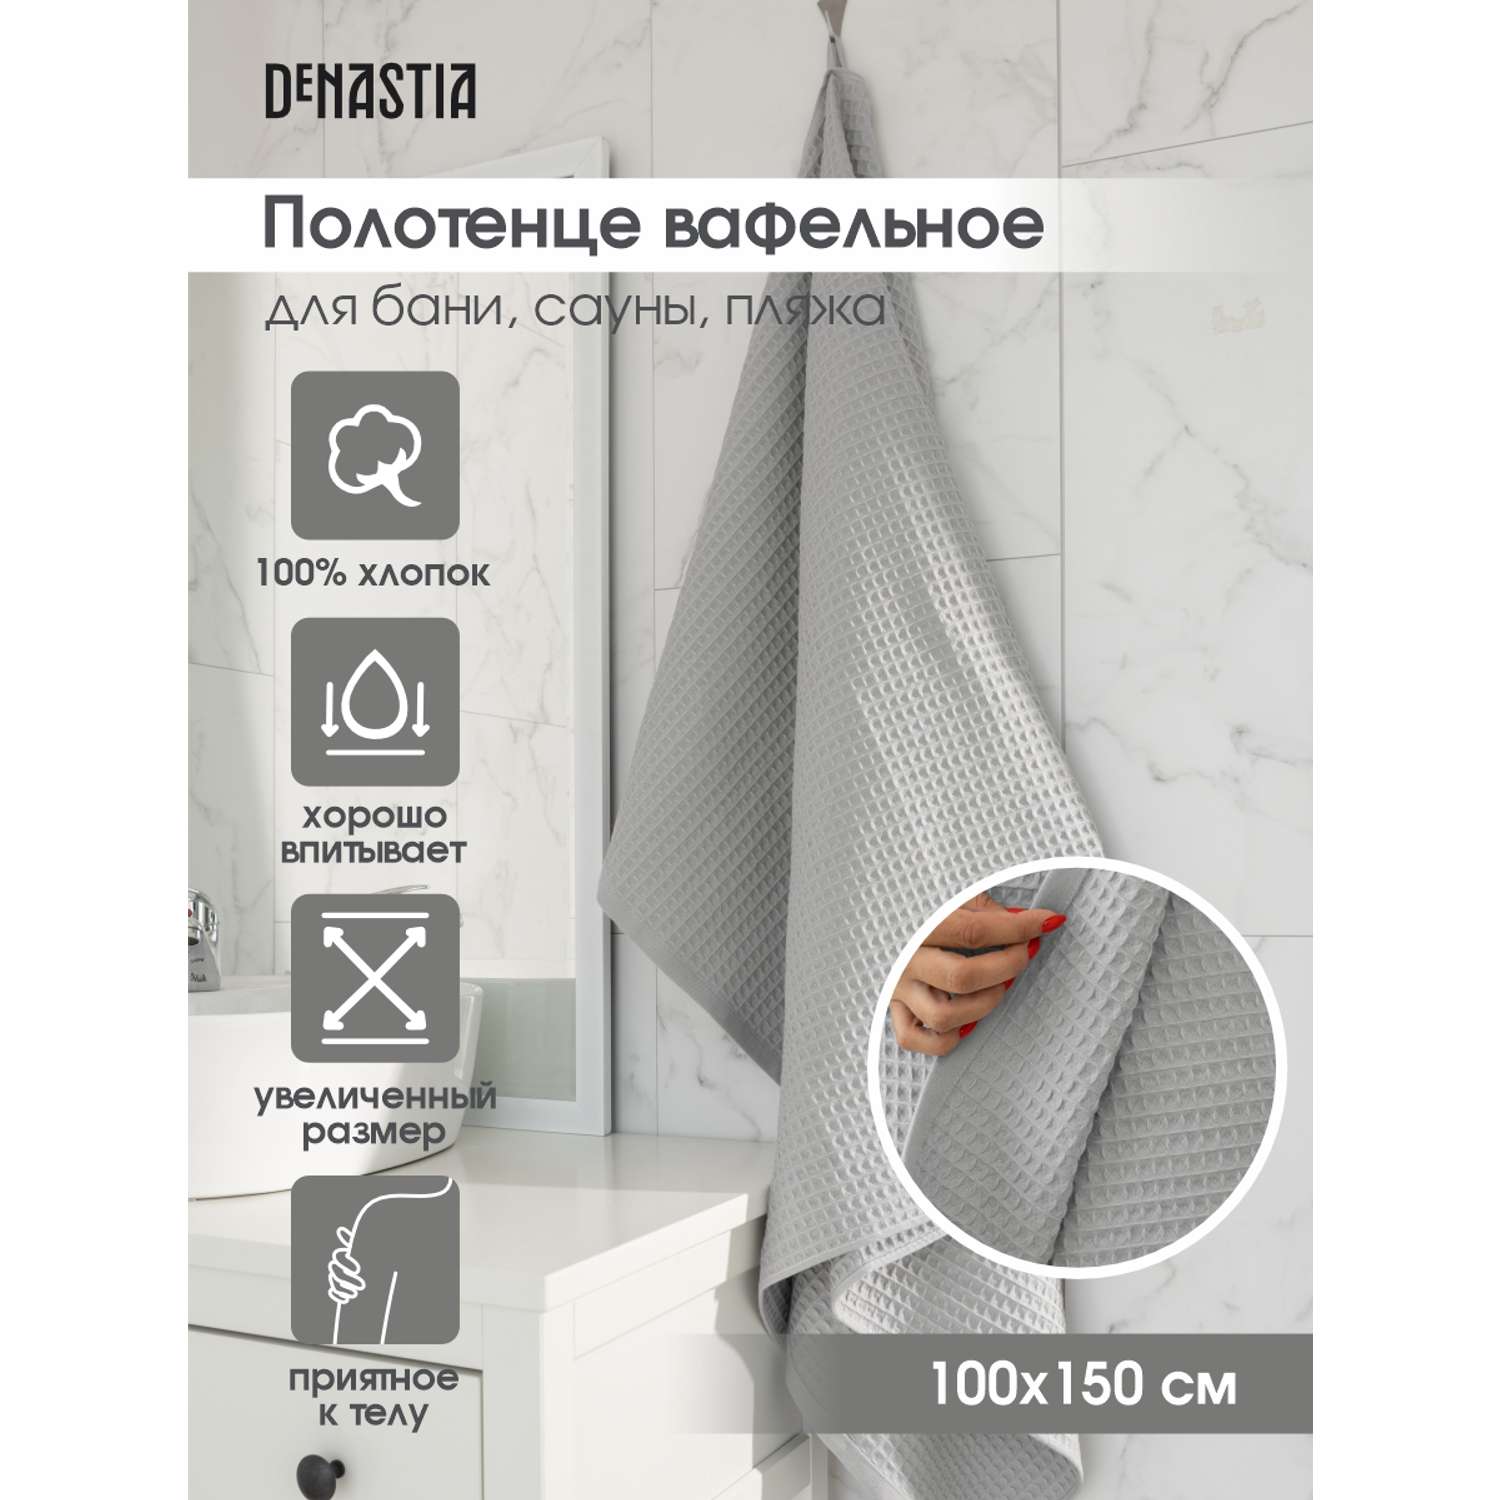 Полотенце DeNASTIA вафельное 90x150 см 100% хлопок светло-серый - фото 2